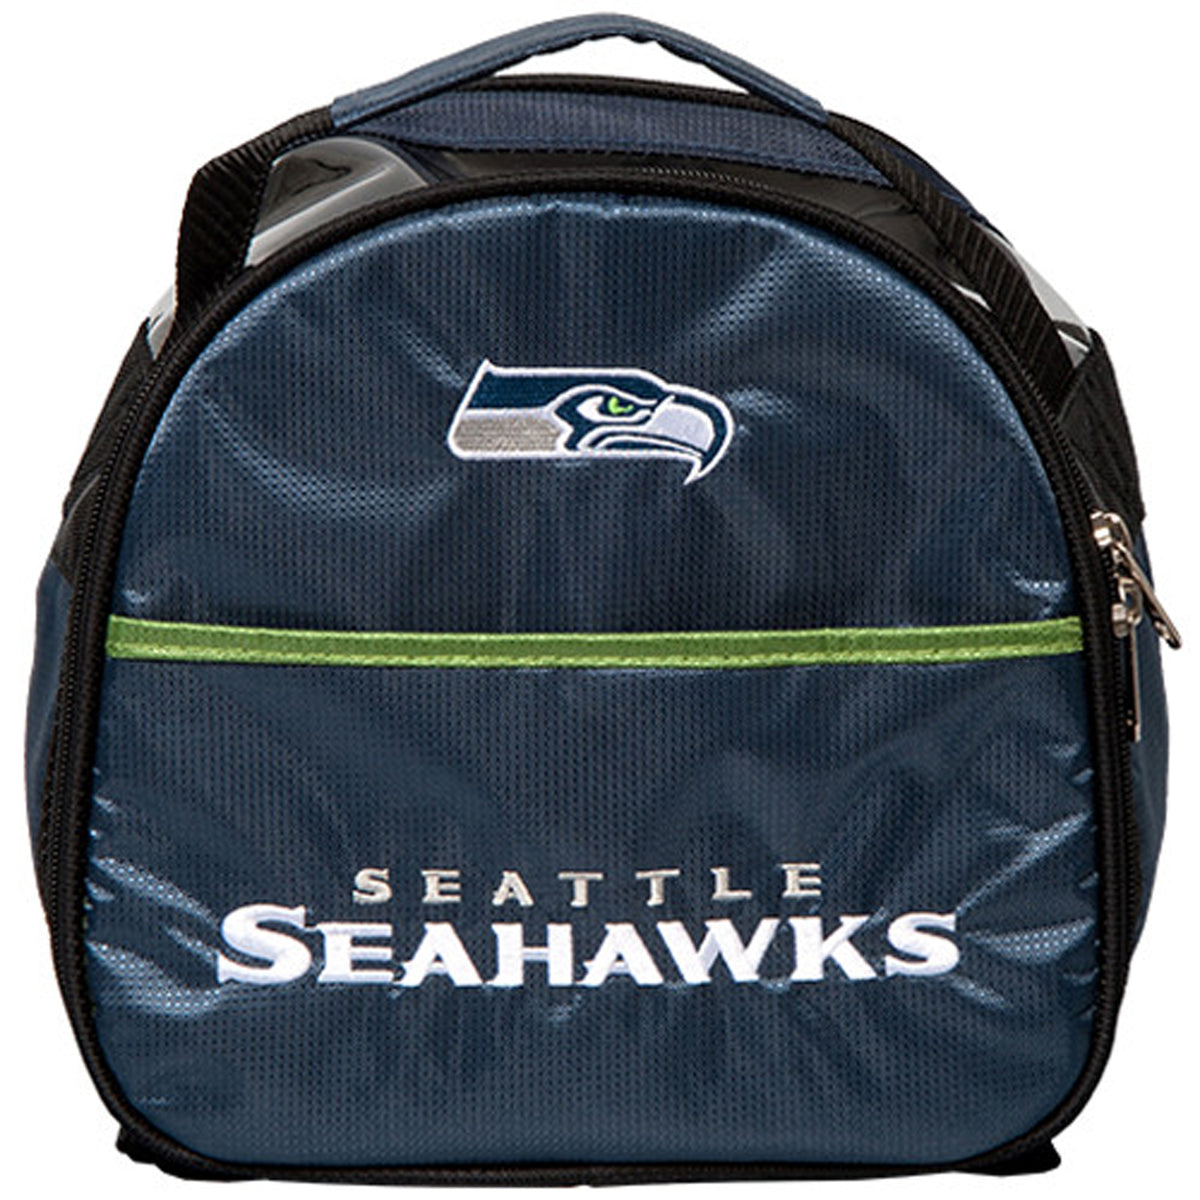 Seattle Seahawks Add On Bag